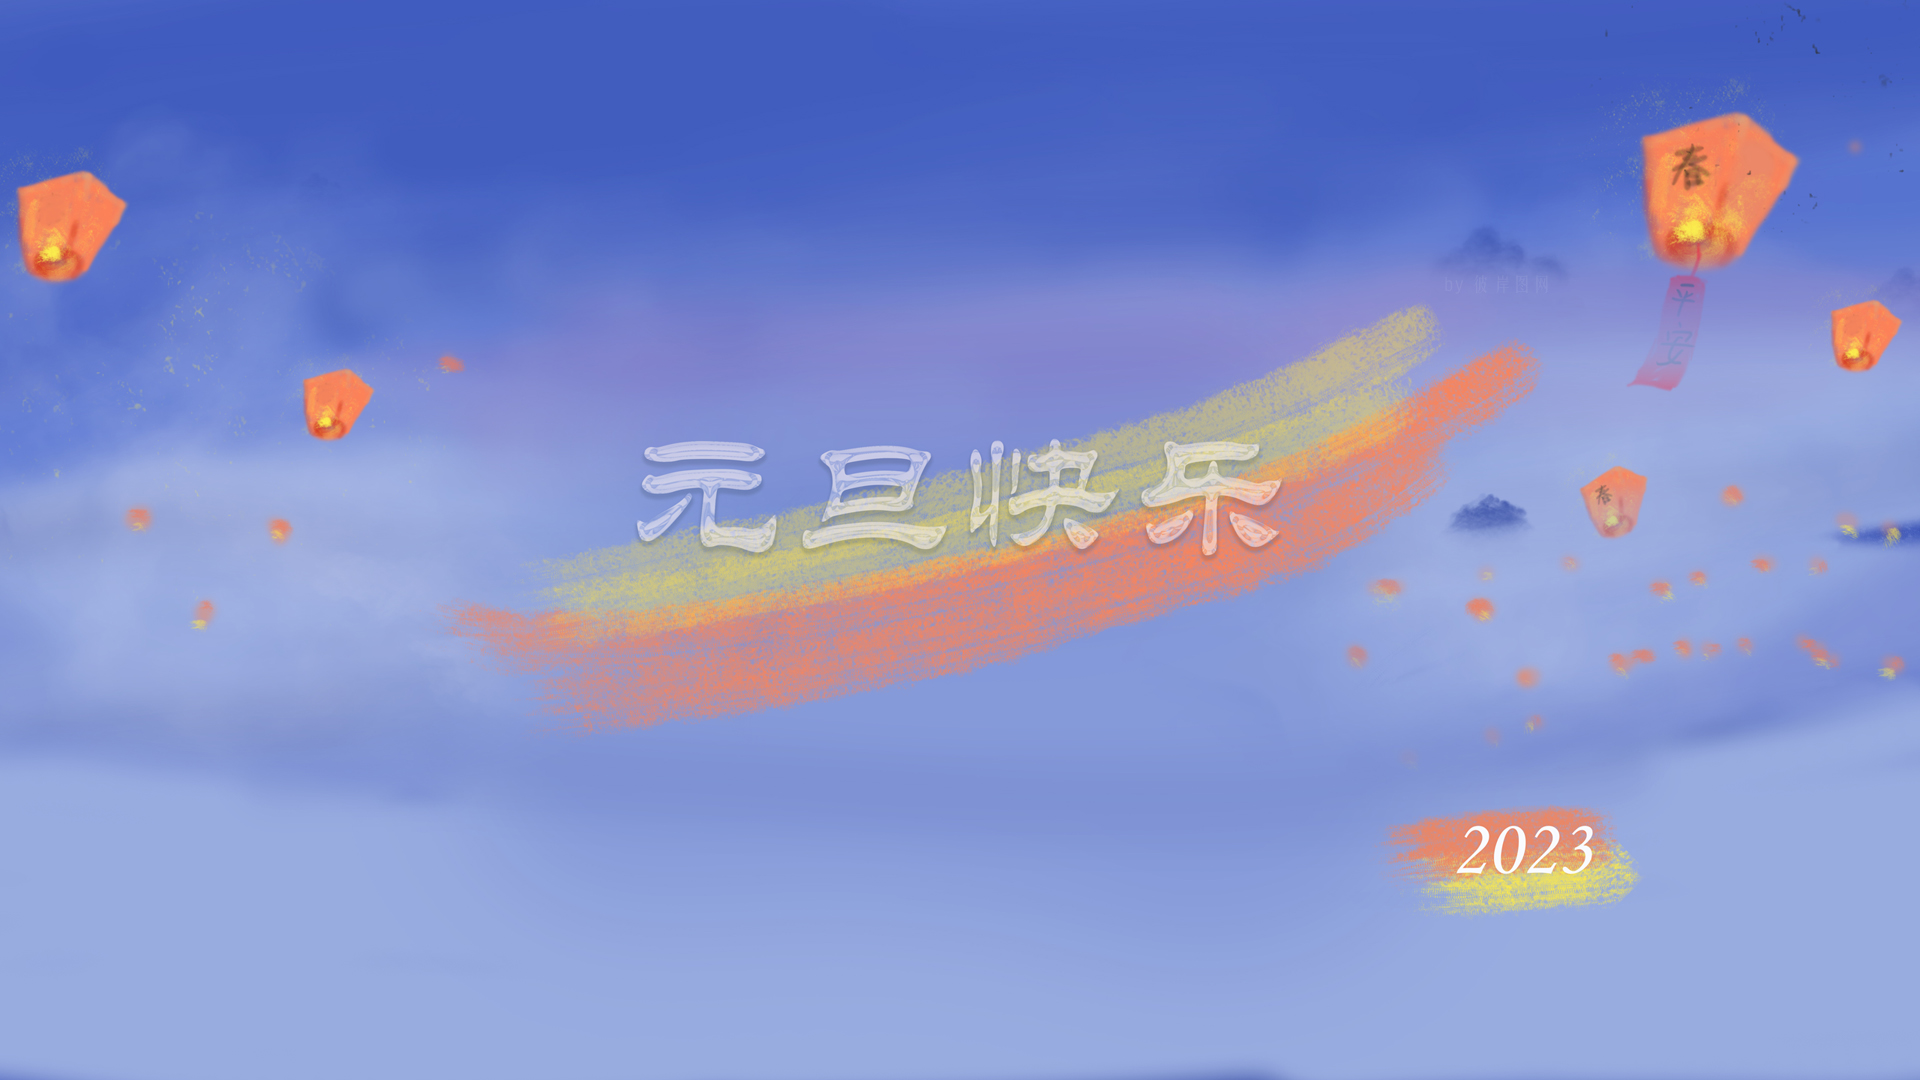 原创 2023 元旦快乐 新年 天空 山 仙境 孔明灯 春节 平安 精选 高清壁纸